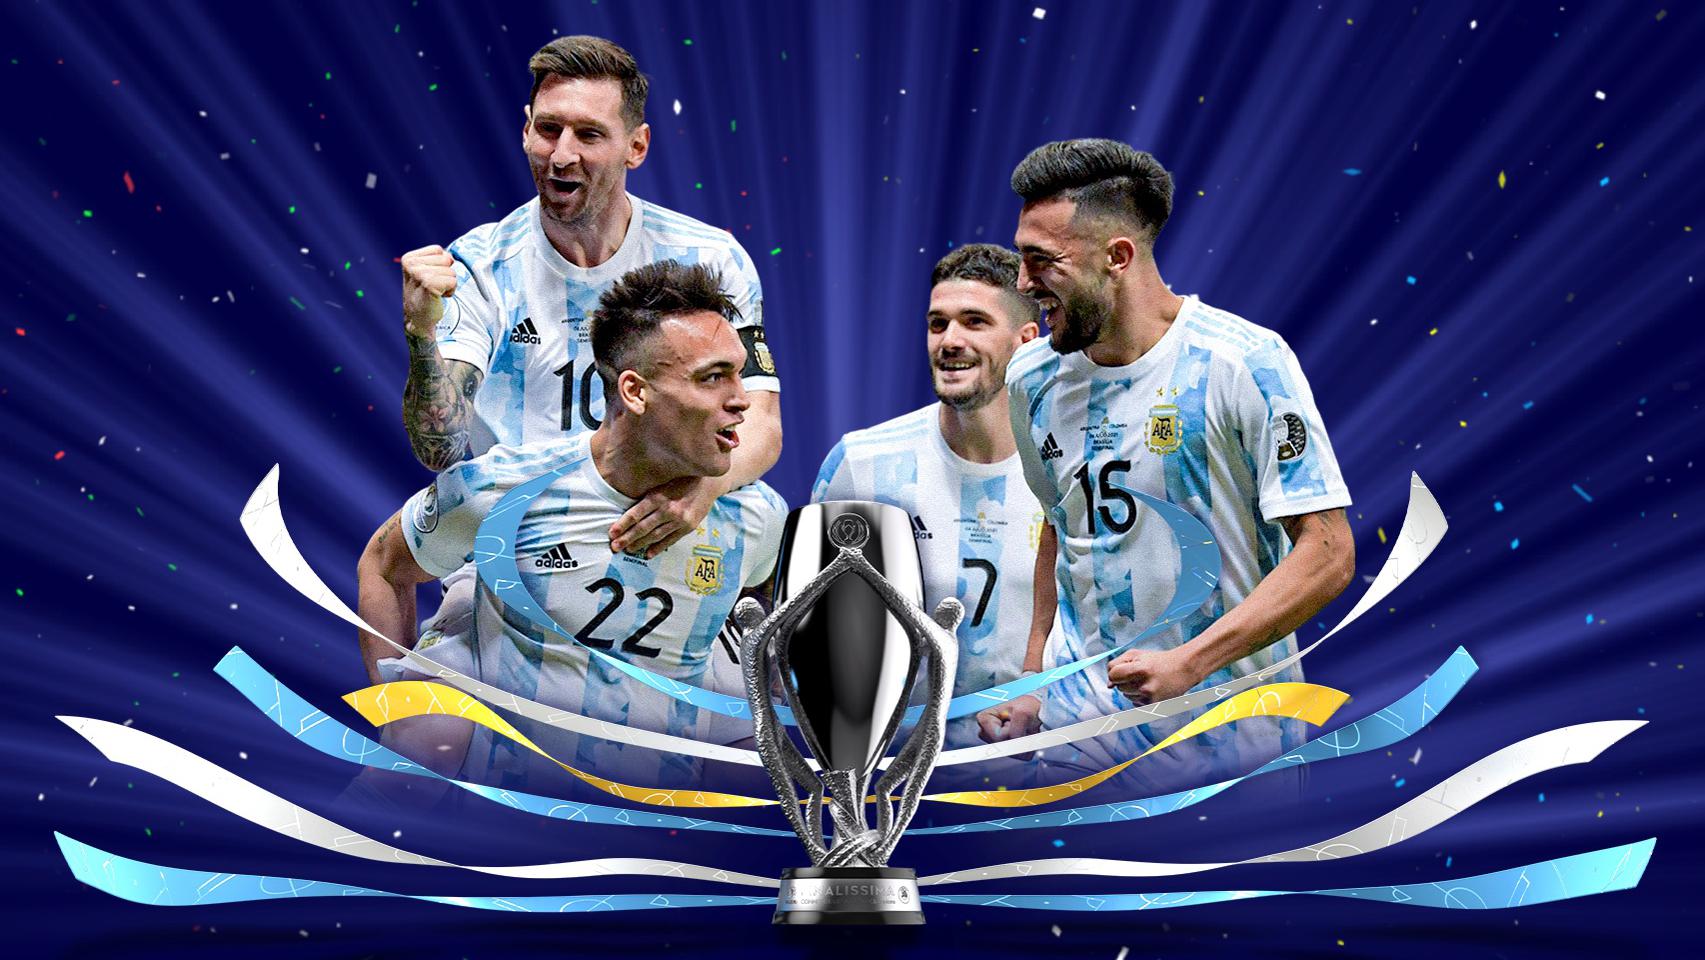 Finalissima 2022: conoce a la campeona Argentina | Finalissima 